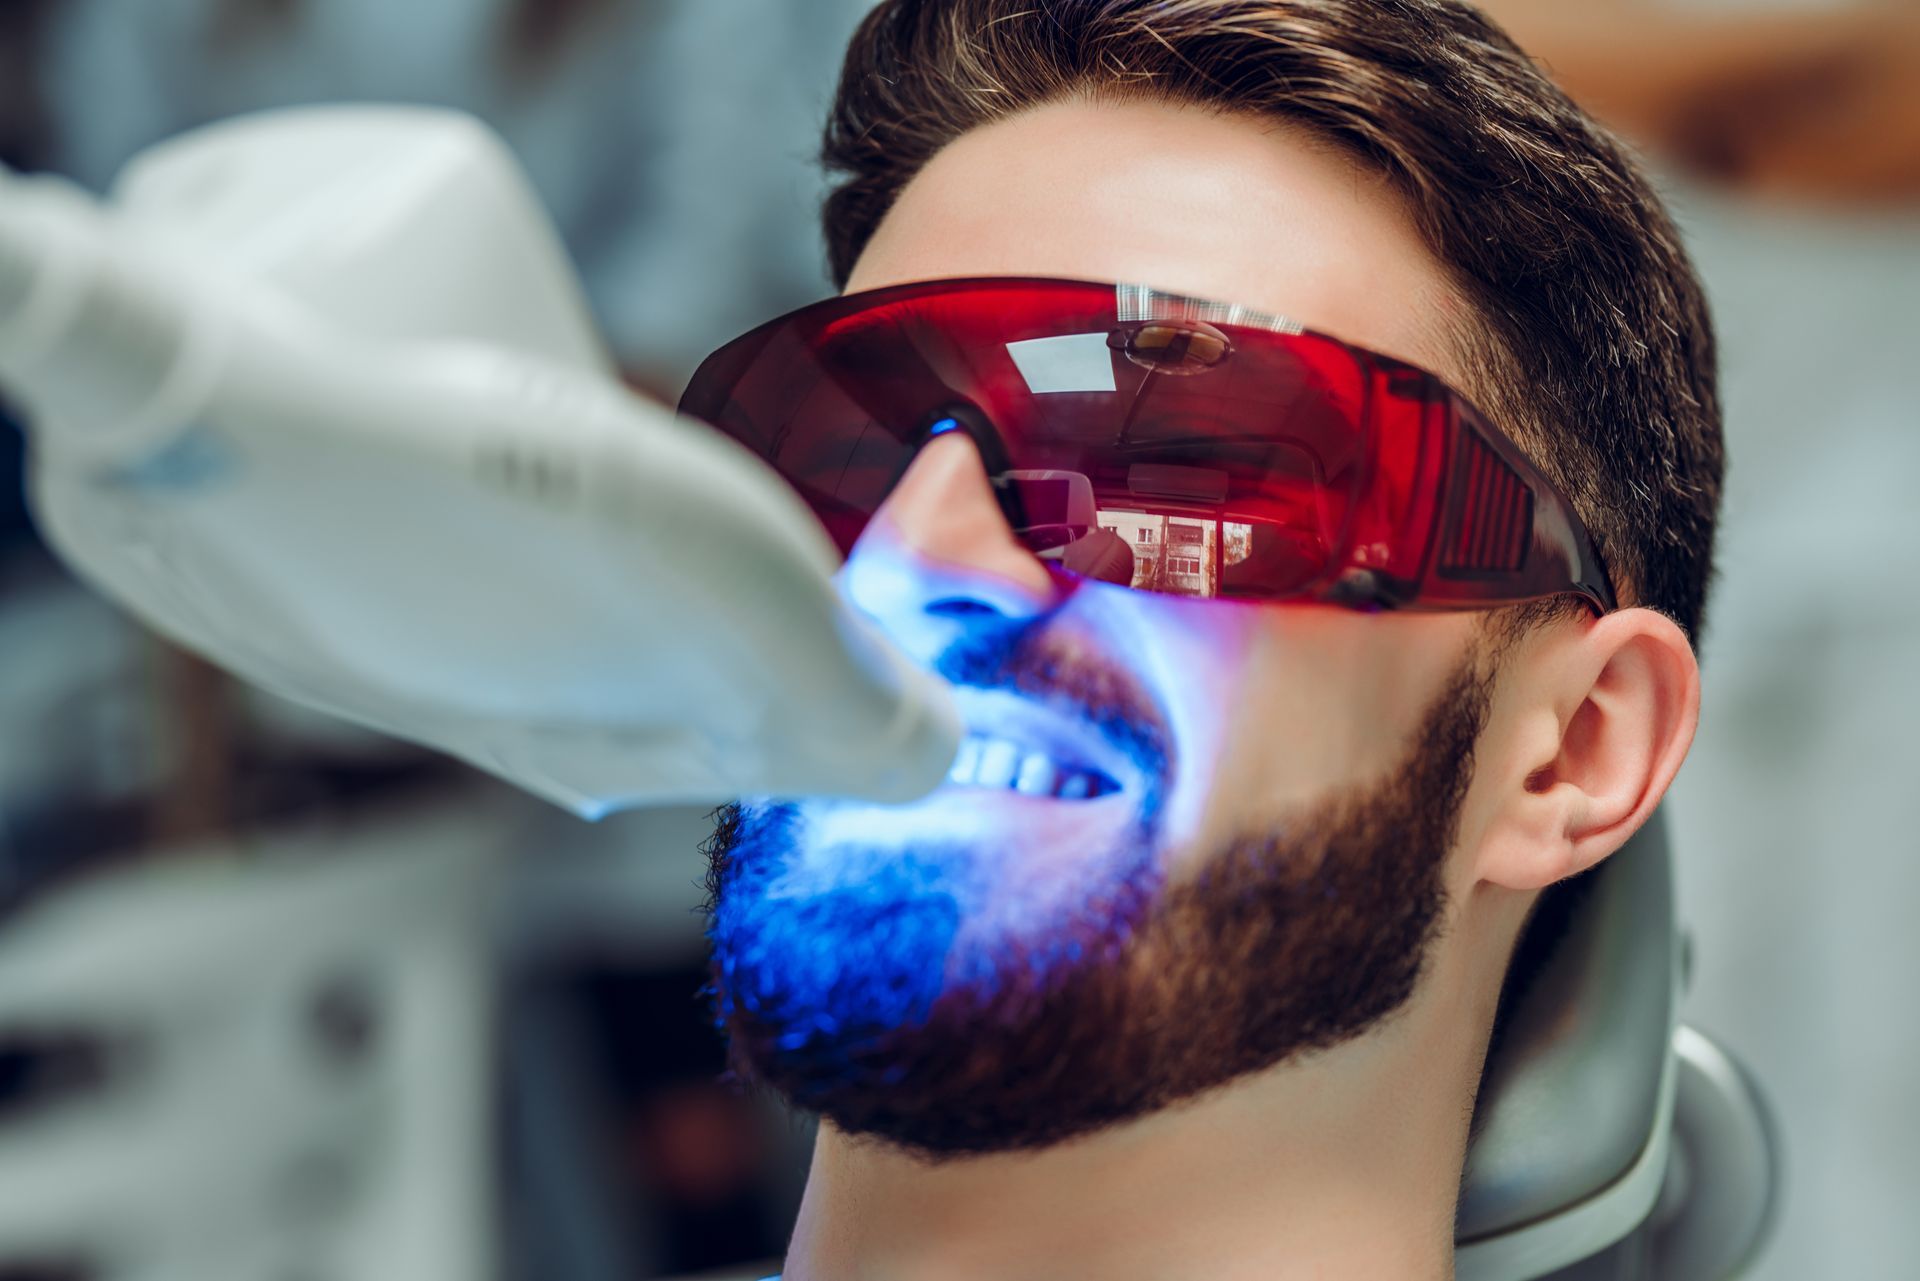 Blanchiment dentaire au laser sur un patient.